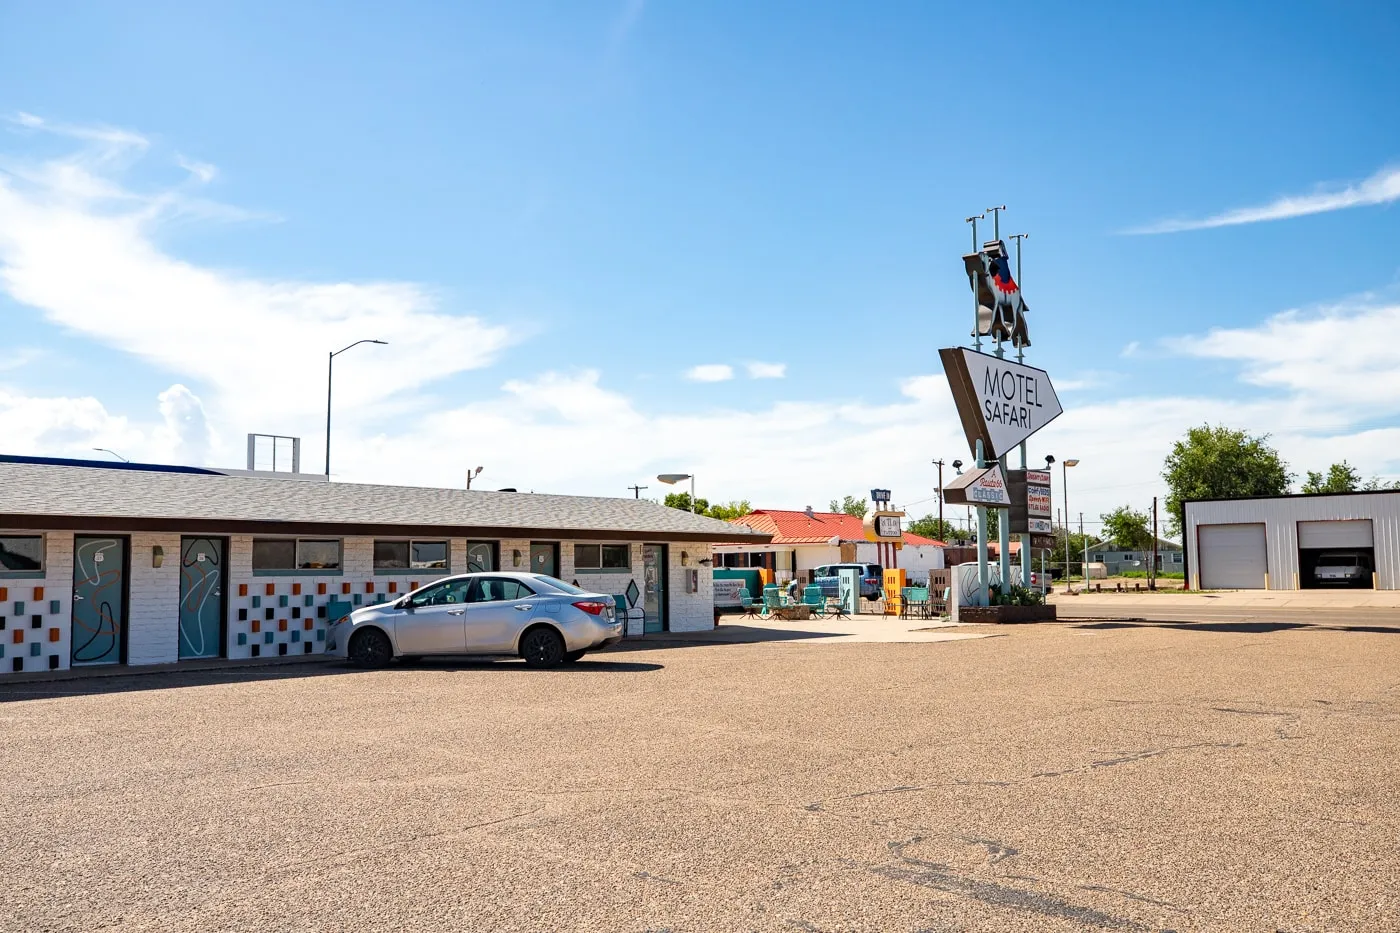 Motel Safari in Tucumcari, New Mexico (Route 66 Motel)